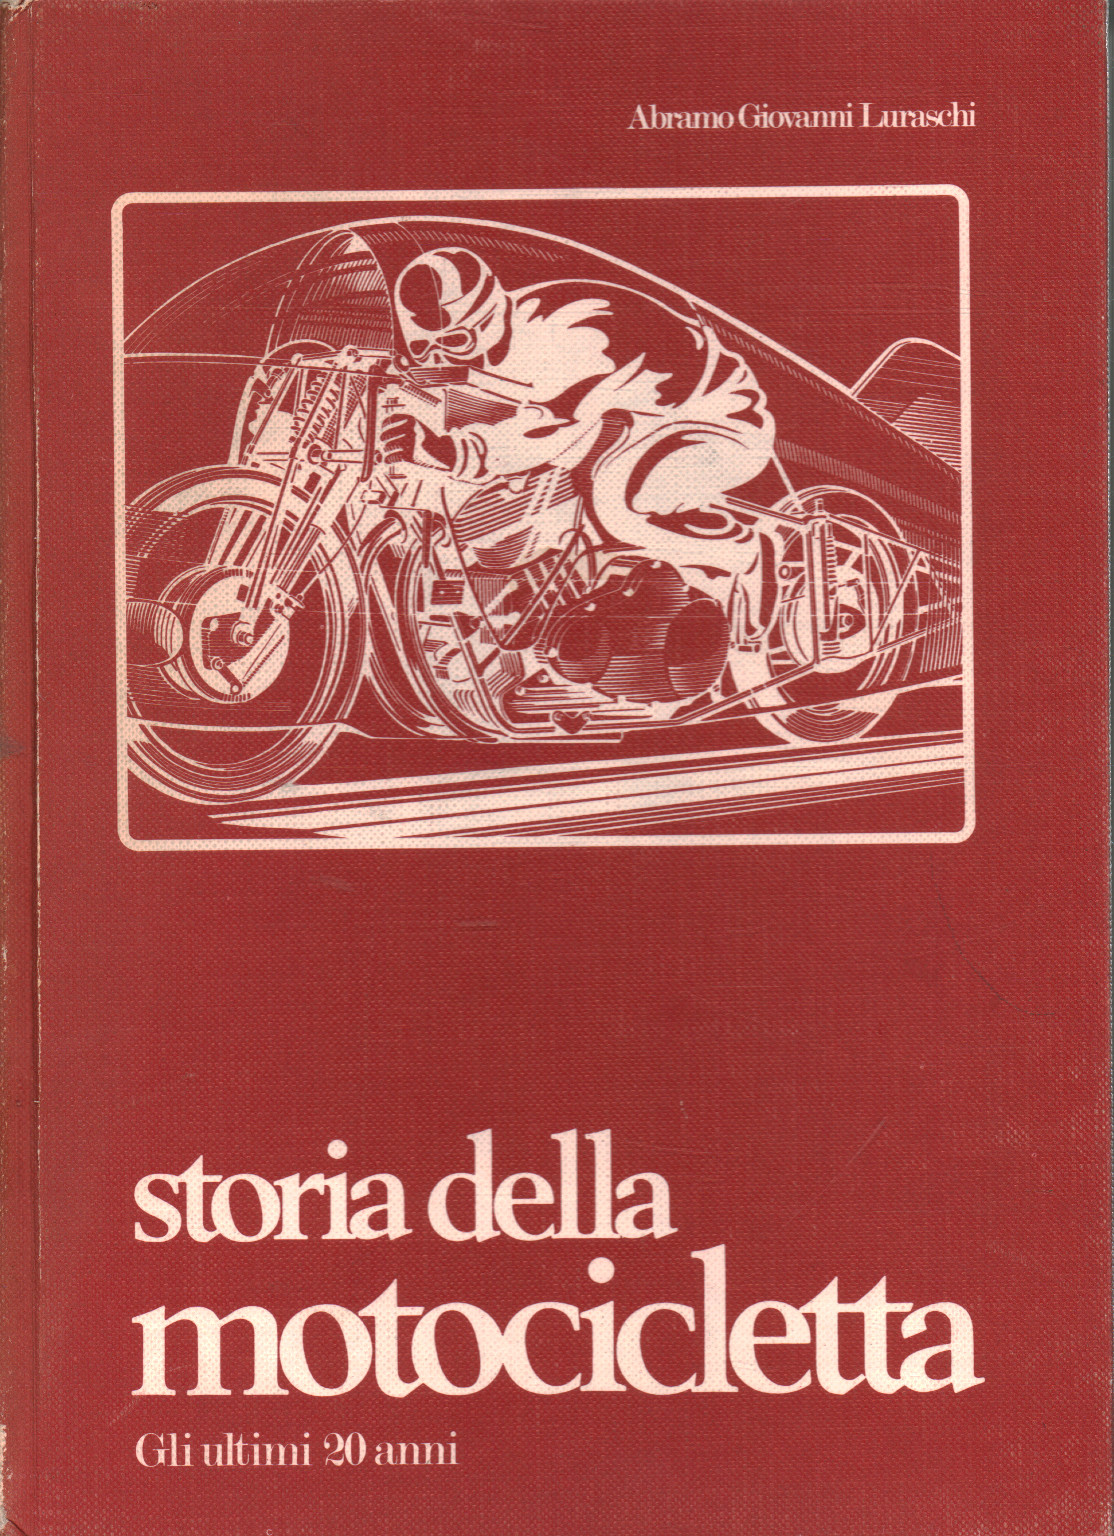 Histoire de la moto. Les 20 dernières années, Abramo Giovanni Luraschi